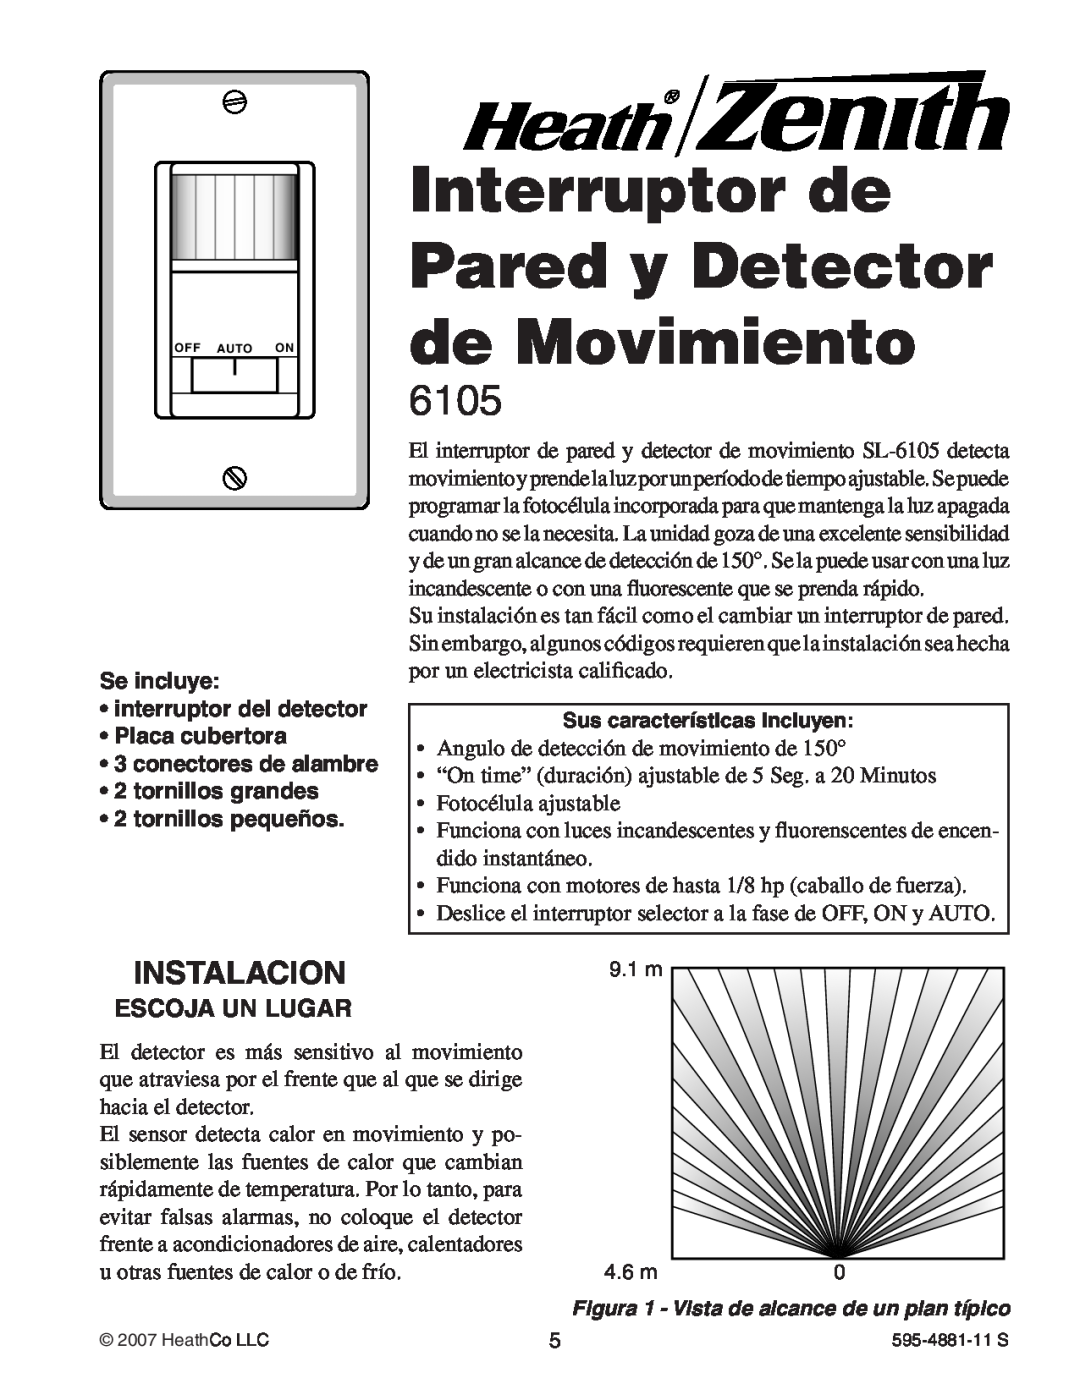 Heath Zenith 6105 manual Interruptor de Pared y Detector de Movimiento, Instalacion, Se incluye interruptor del detector 